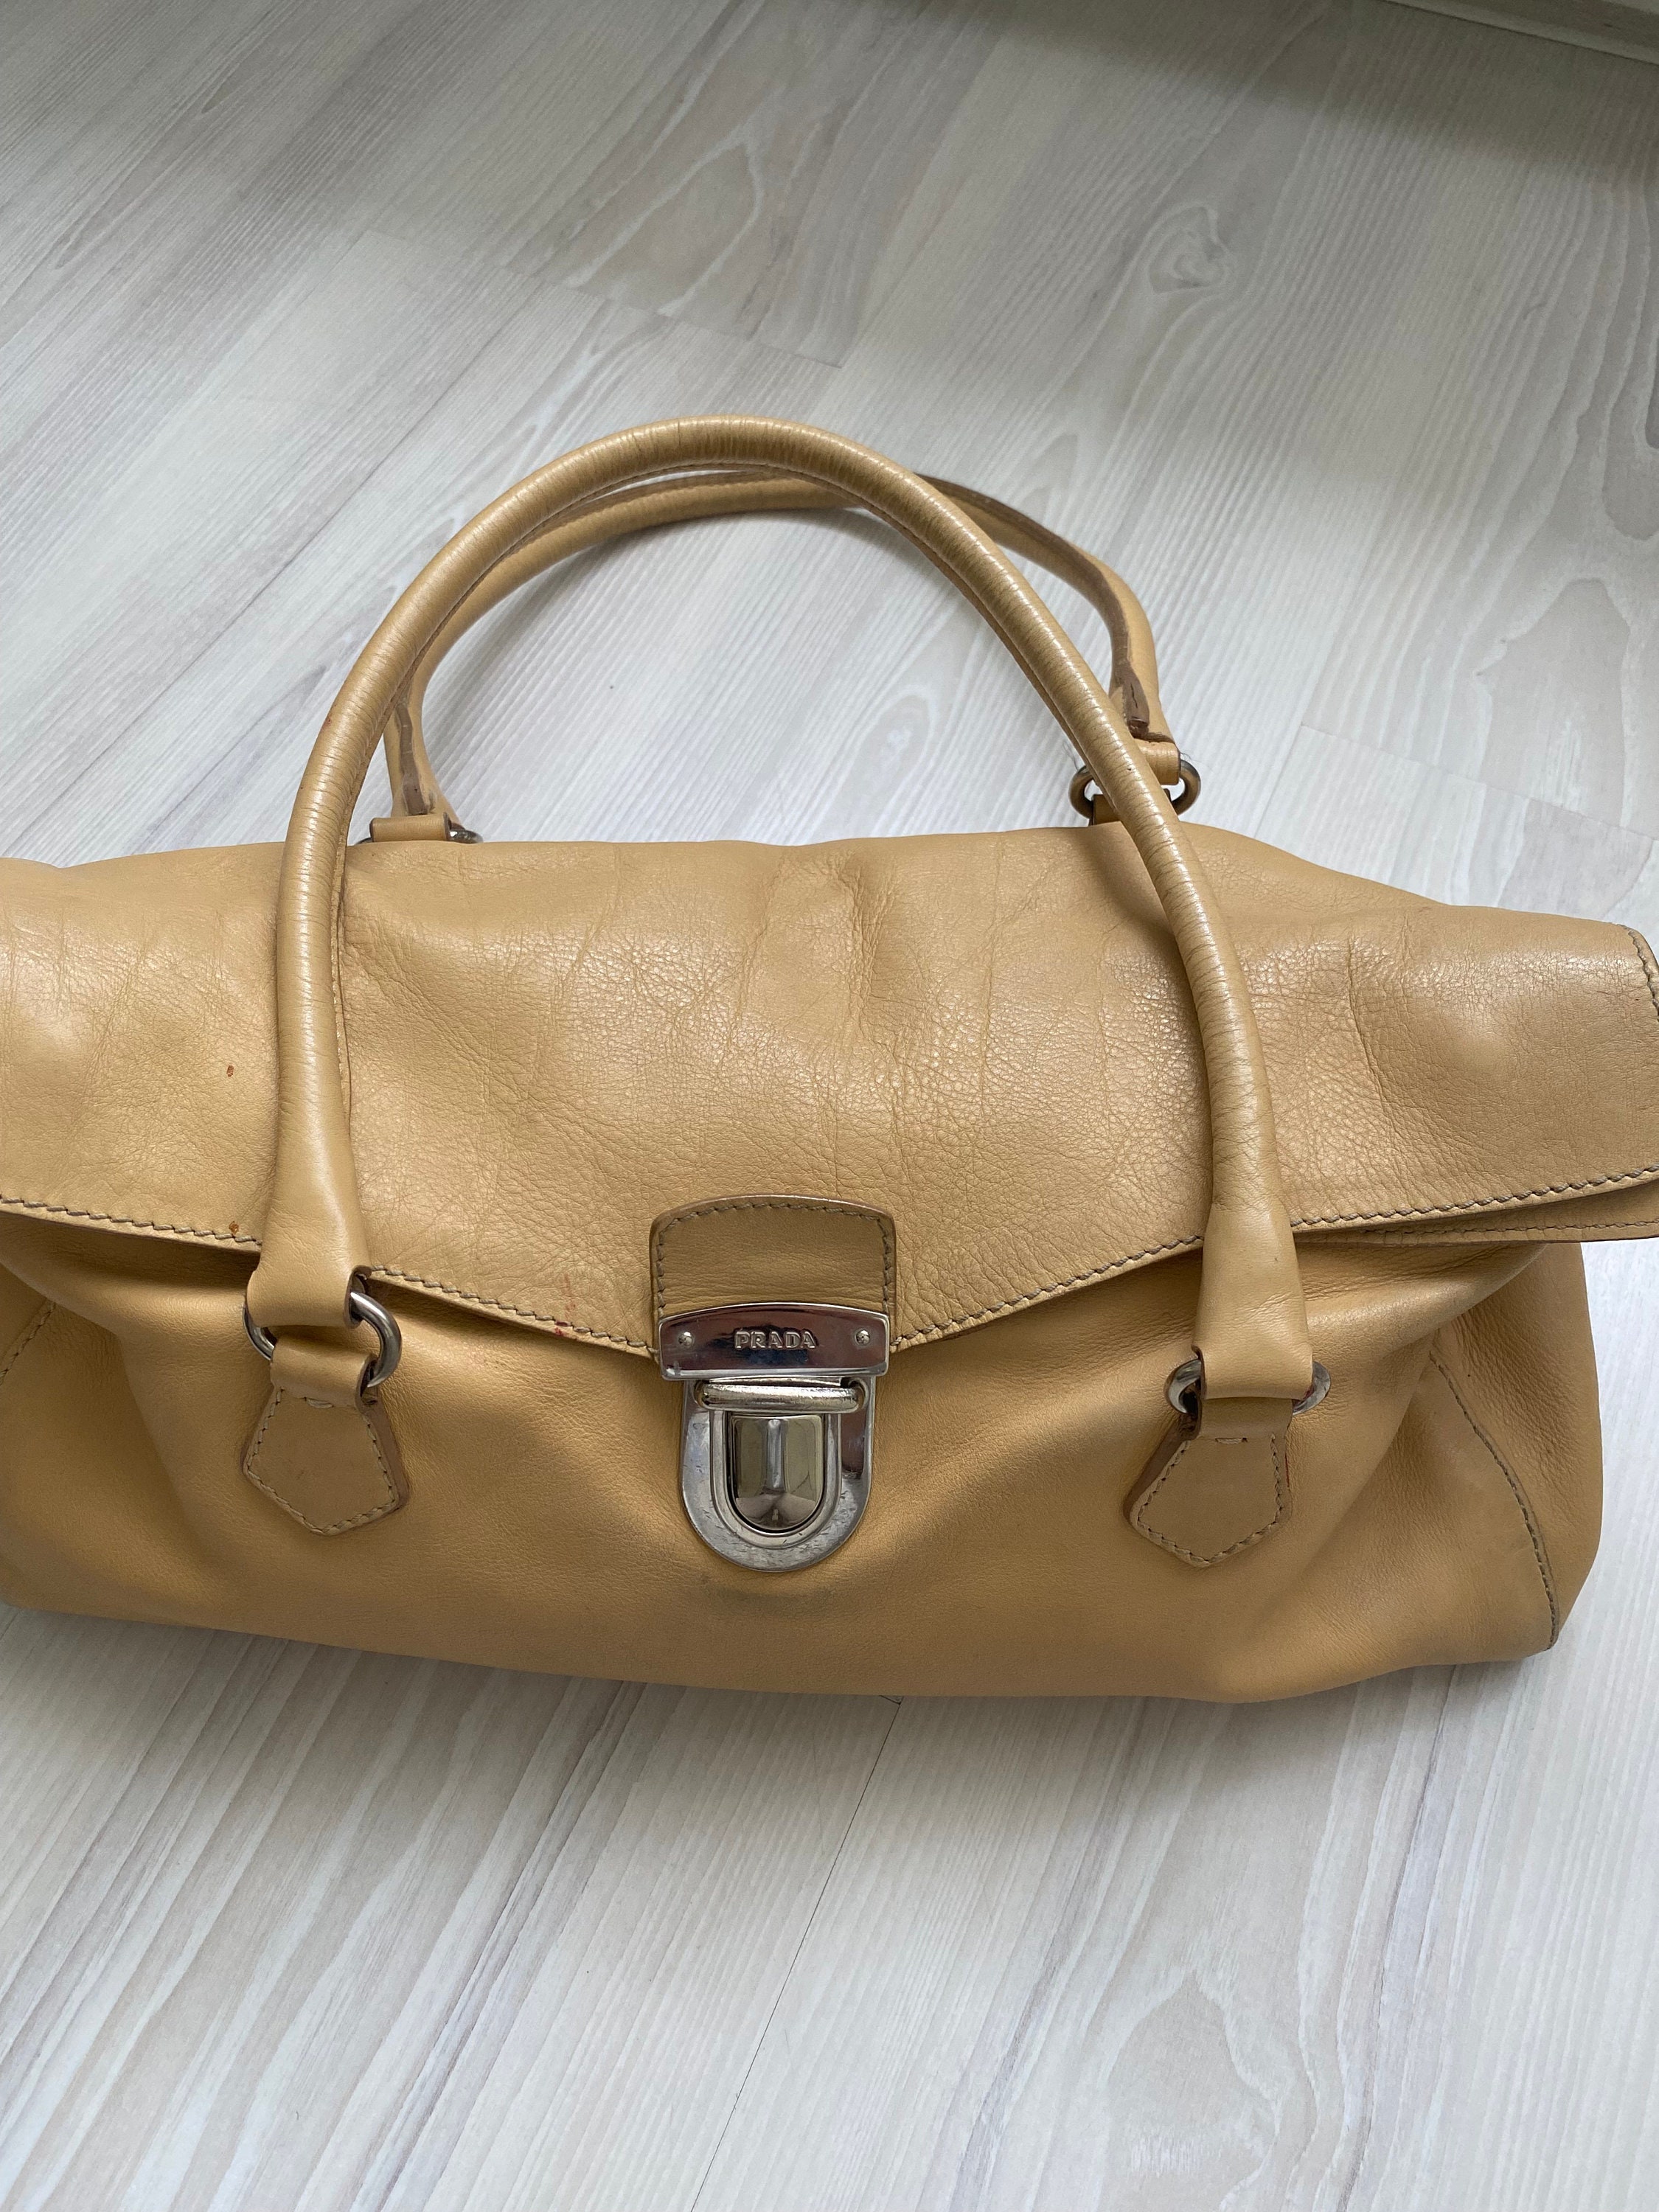 VIntage Prada Medium Leather Bag Brown Shoulder Bag 1990’s